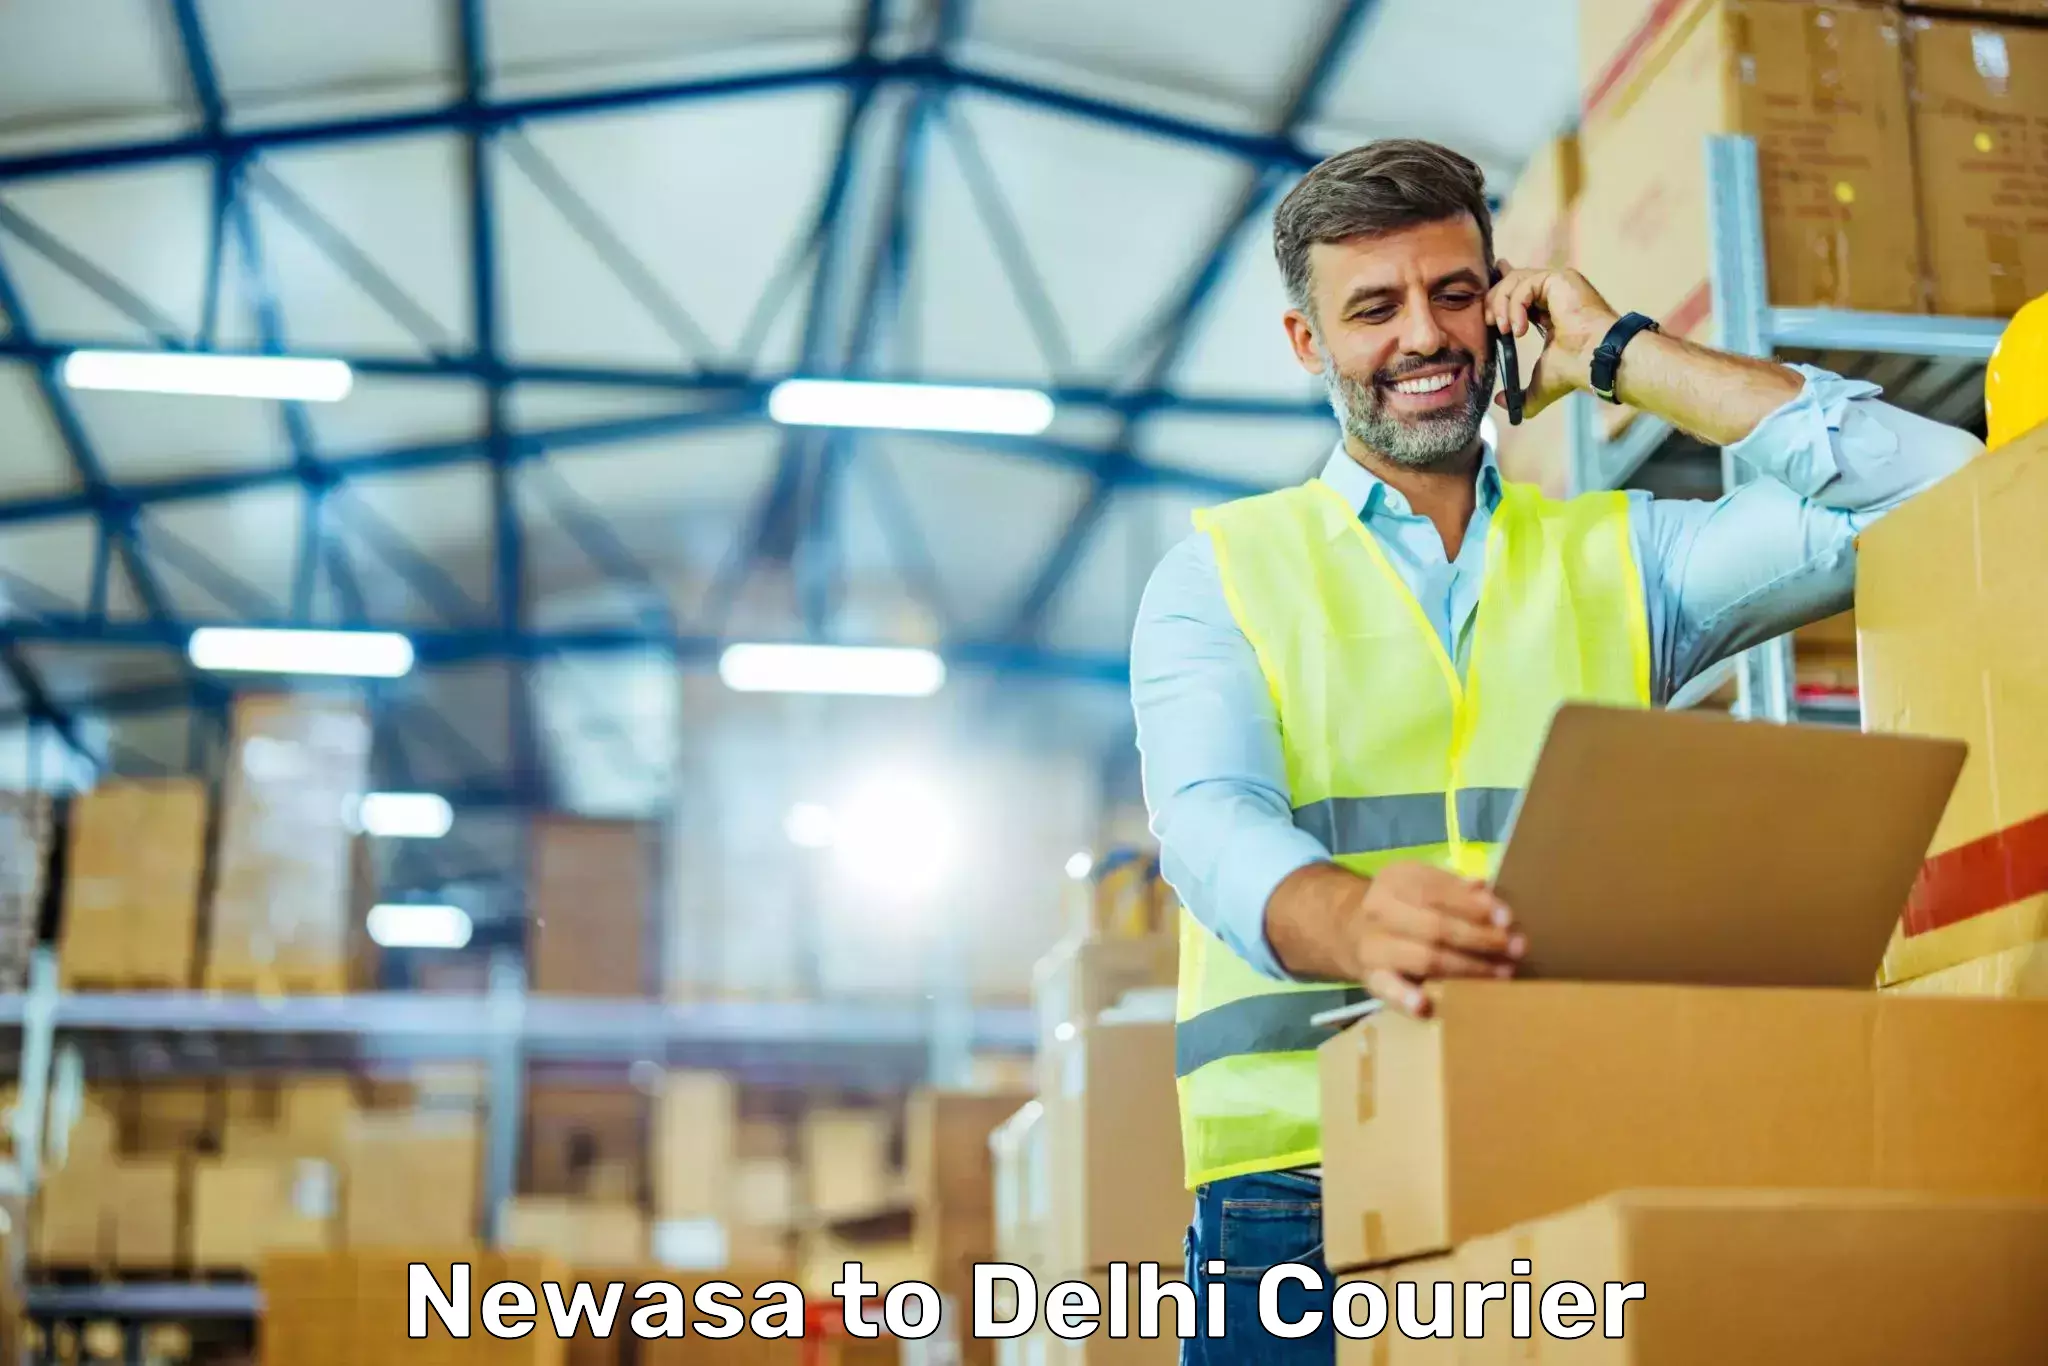 Customer-oriented courier services Newasa to Kalkaji